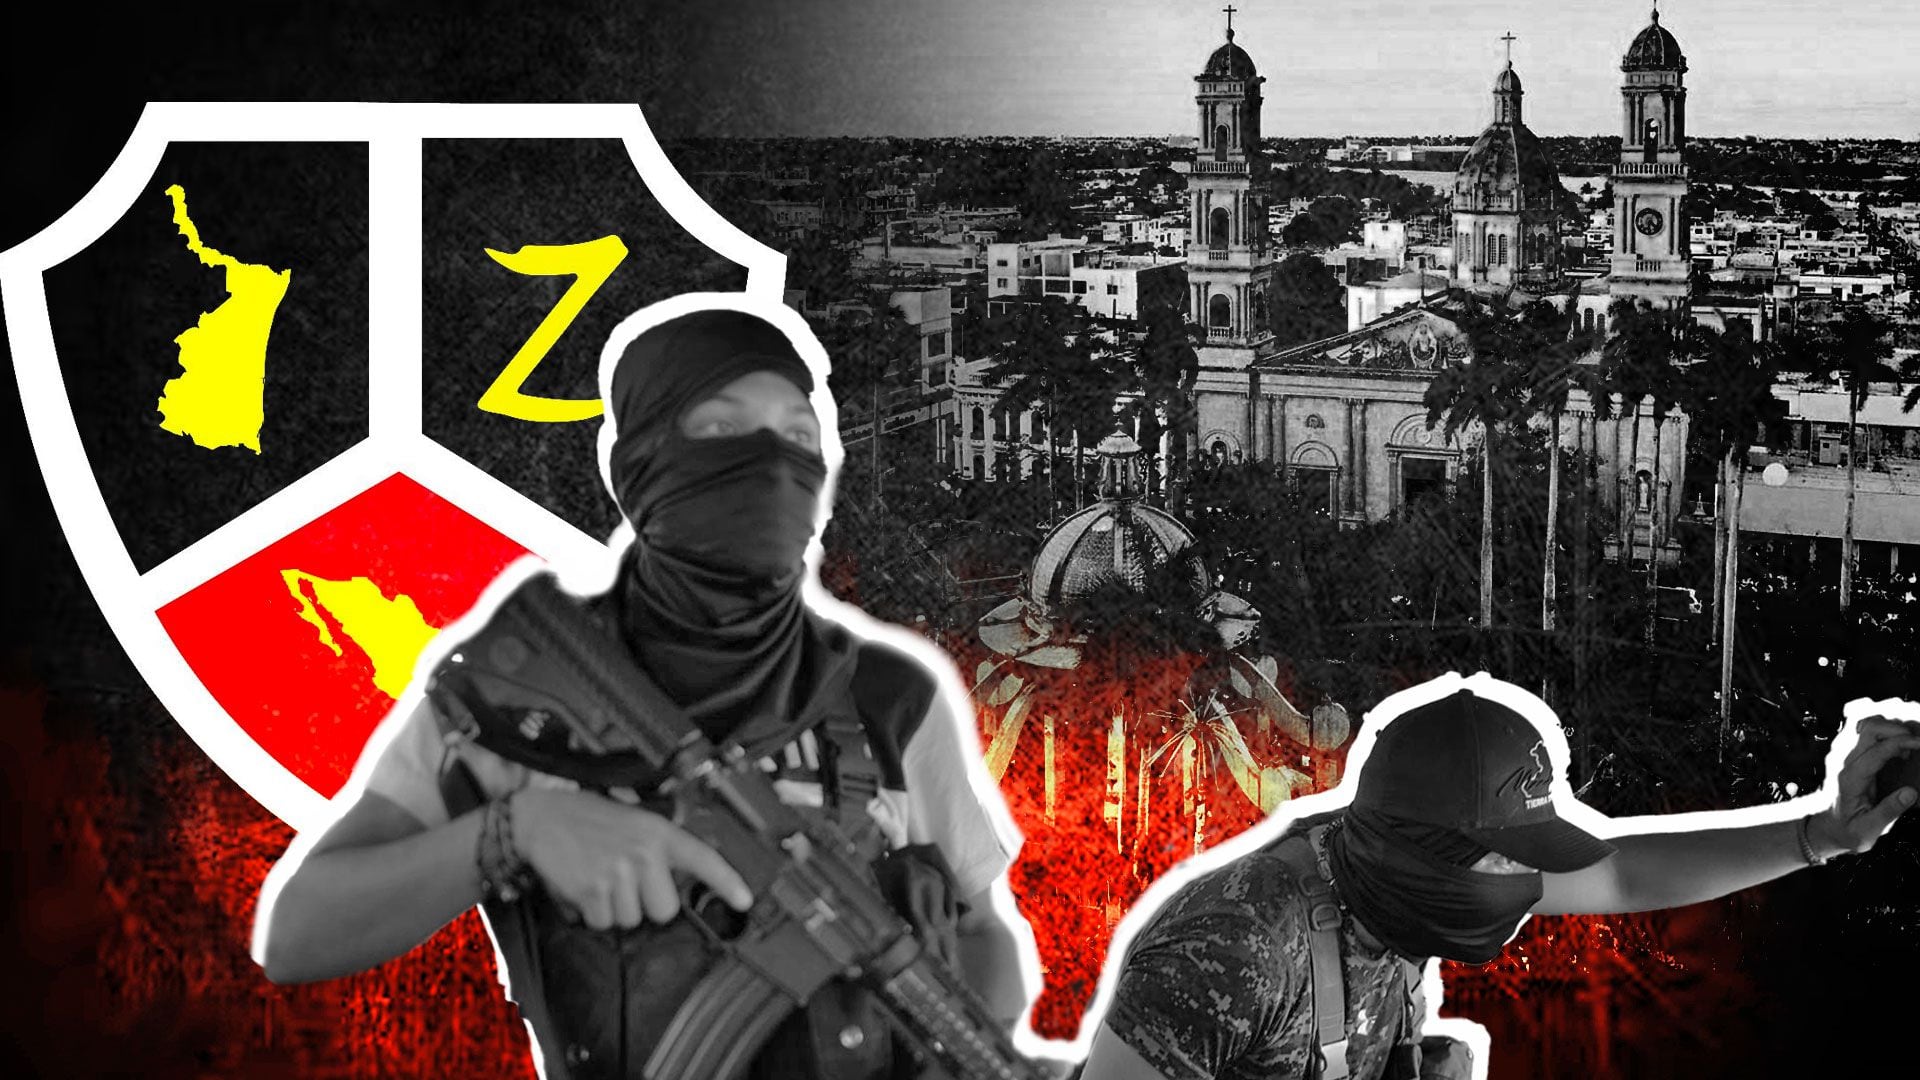 “El Conde Adal” y “El Dos” son individuos pertenecientes a la organización criminal Los Zetas que han sido condenados a más de 33 años de prisión.